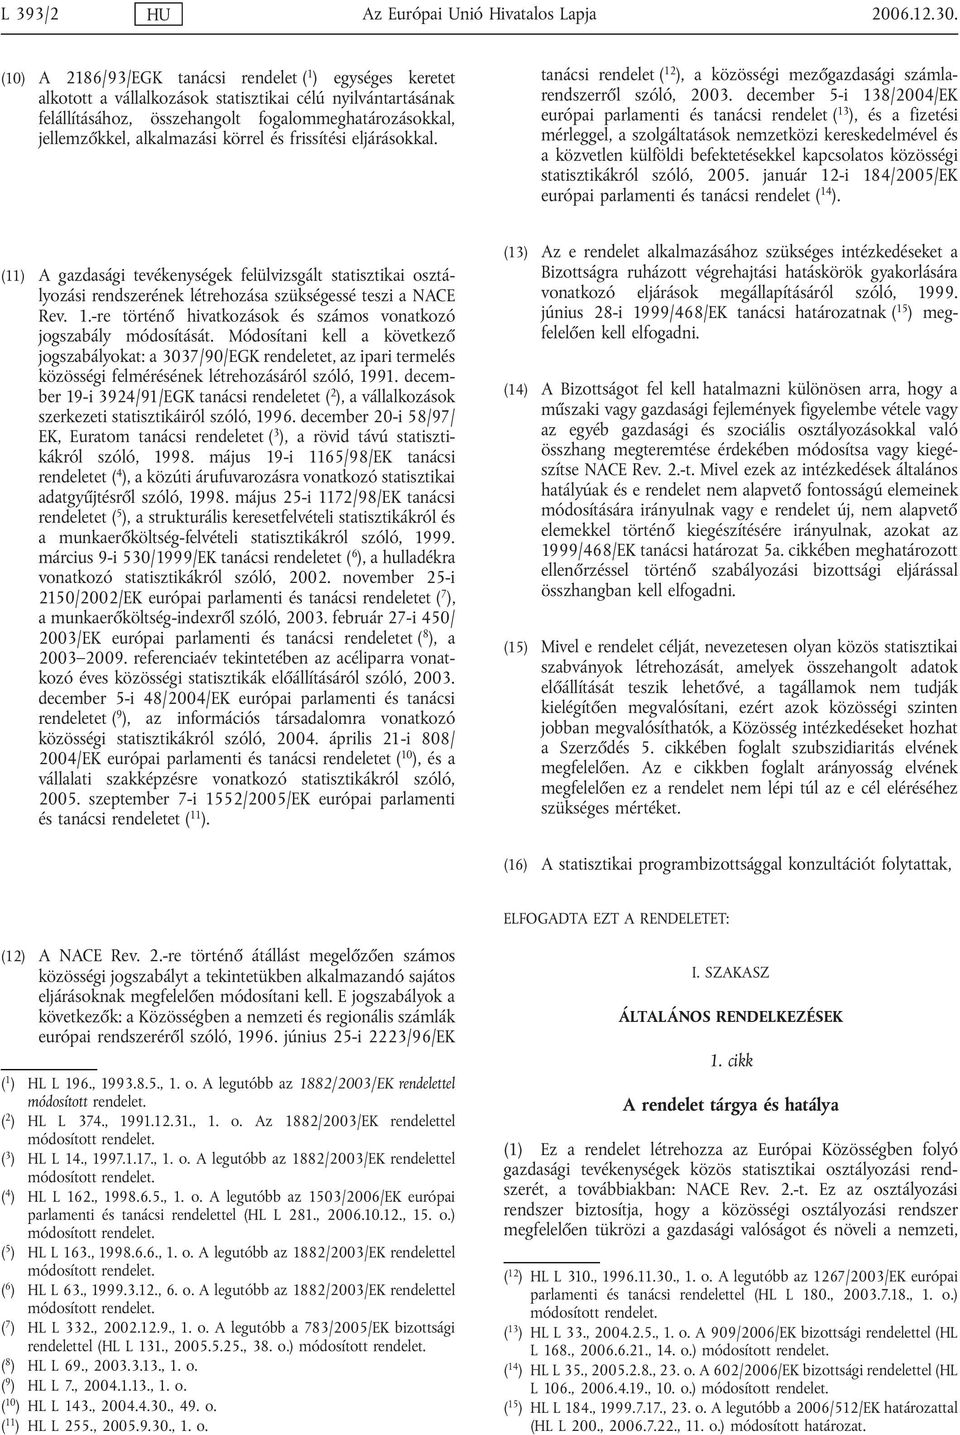 alkalmazási körrel és frissítési eljárásokkal. tanácsi rendelet ( 12 ), a közösségi mezőgazdasági számlarendszerről szóló, 2003.